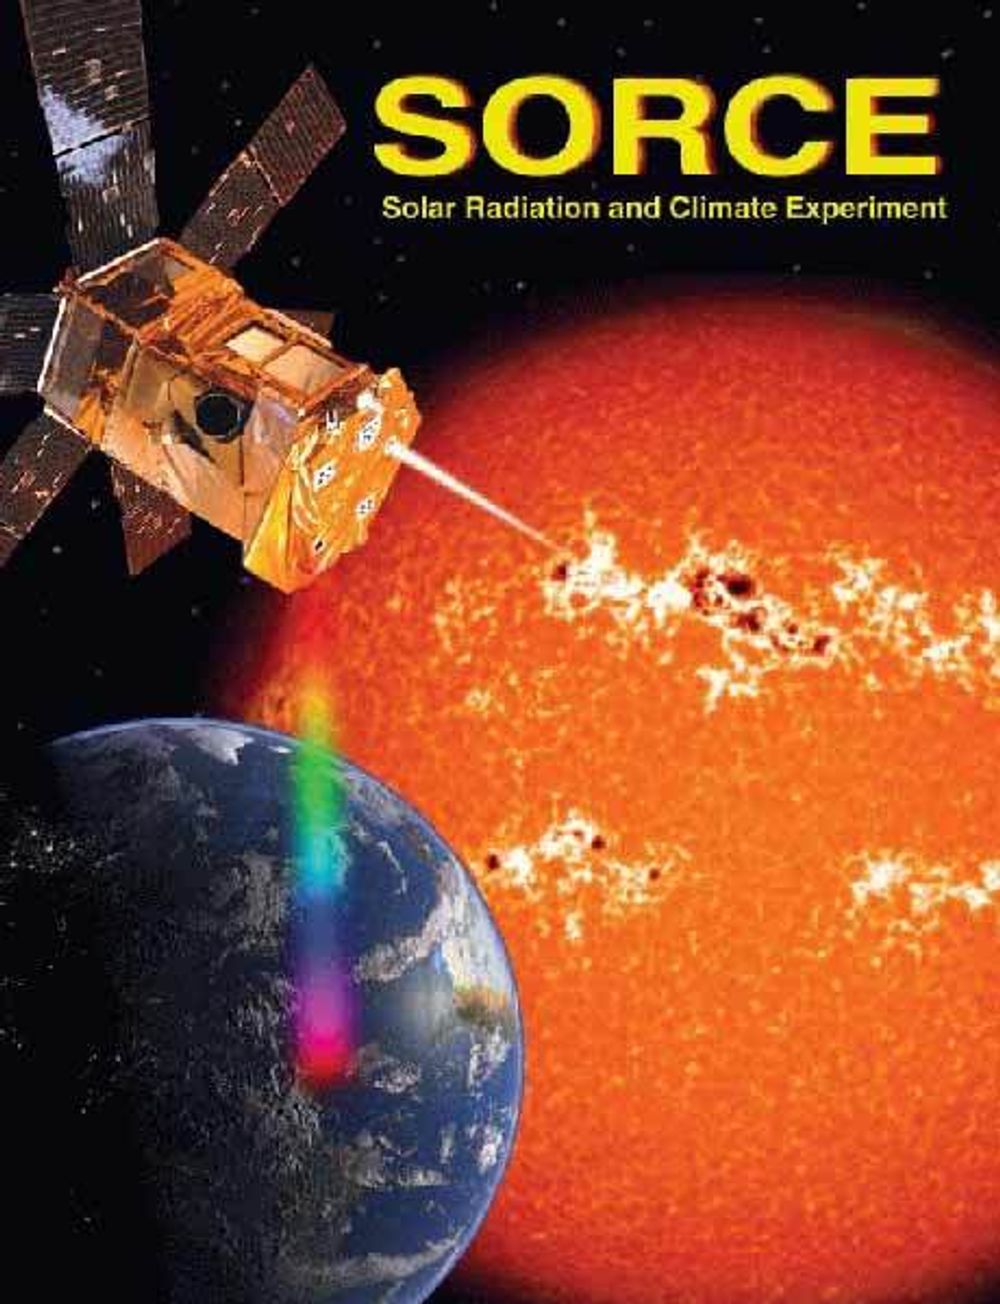 NASAs SOURCE (Solar Radiation and Climate Experiment) satellitt ble skutt opp i 2003. Sammen med andre satellitter har SOURCE gitt oss nye målinger av Solens utstråling oh hvordan den  varierer slik at vi bedre kan forstå hvordan Solen bidrar til klimavariasjoner og hvordan den påvriker ozonmengden i Jordens atmosfære.